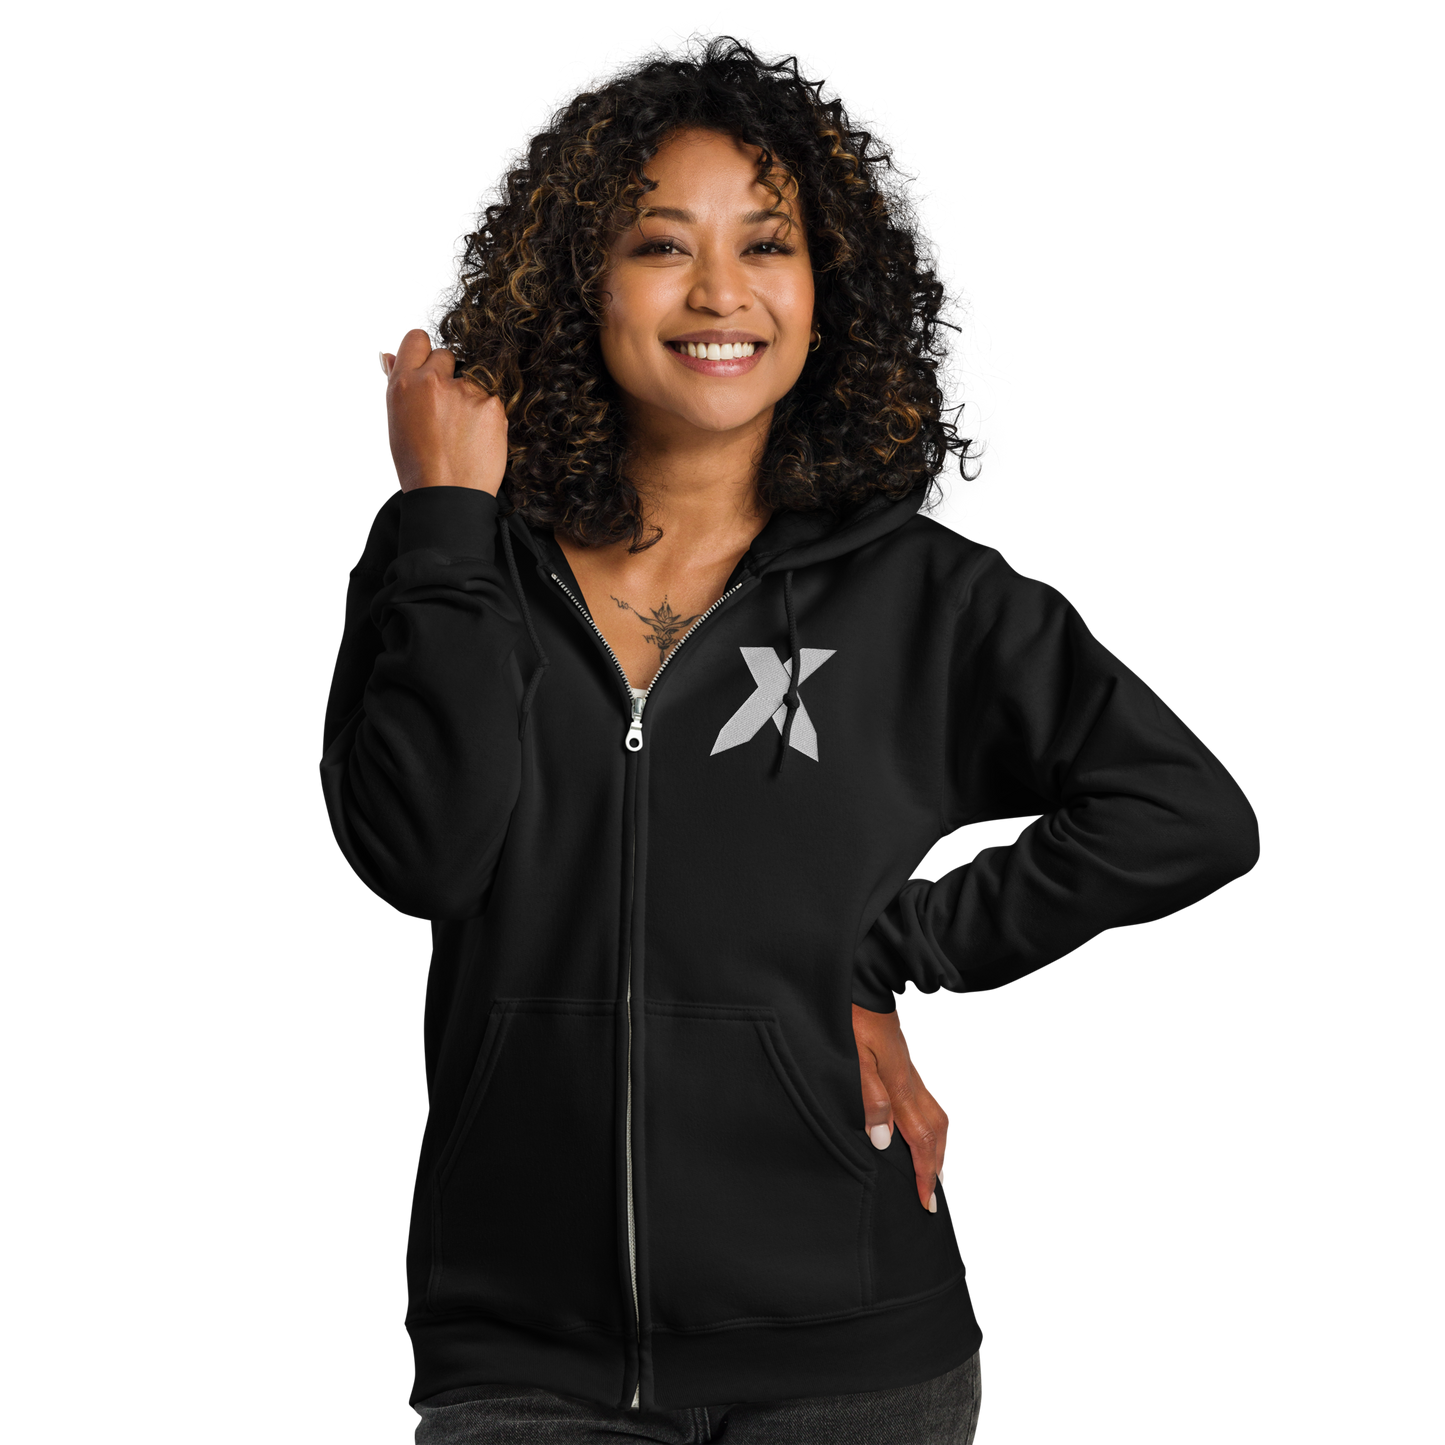 NXS Logo Zip-Up Hoodie (White Stitch)